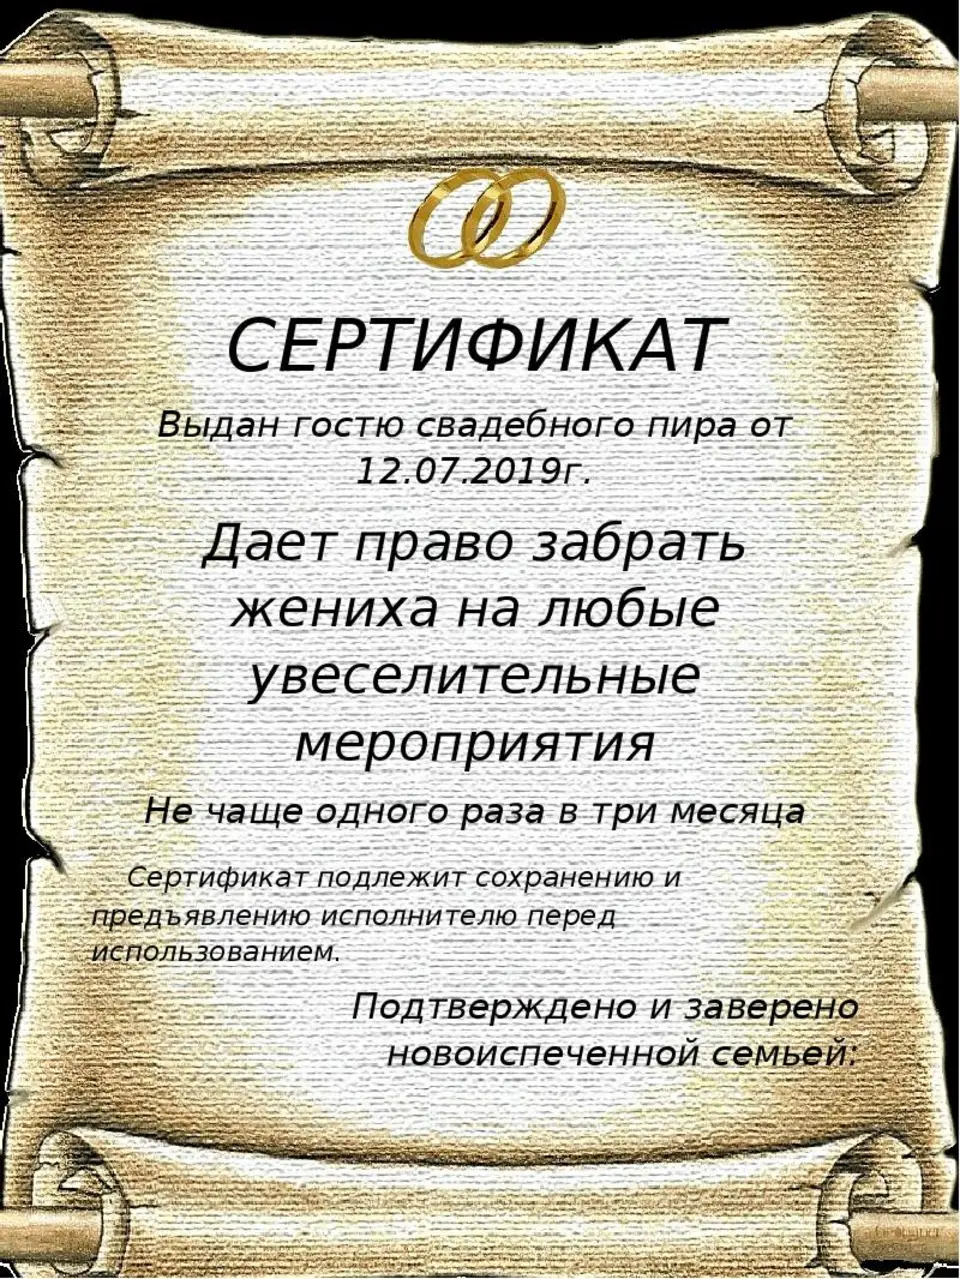 Сертификаты для гостей на свадьбе